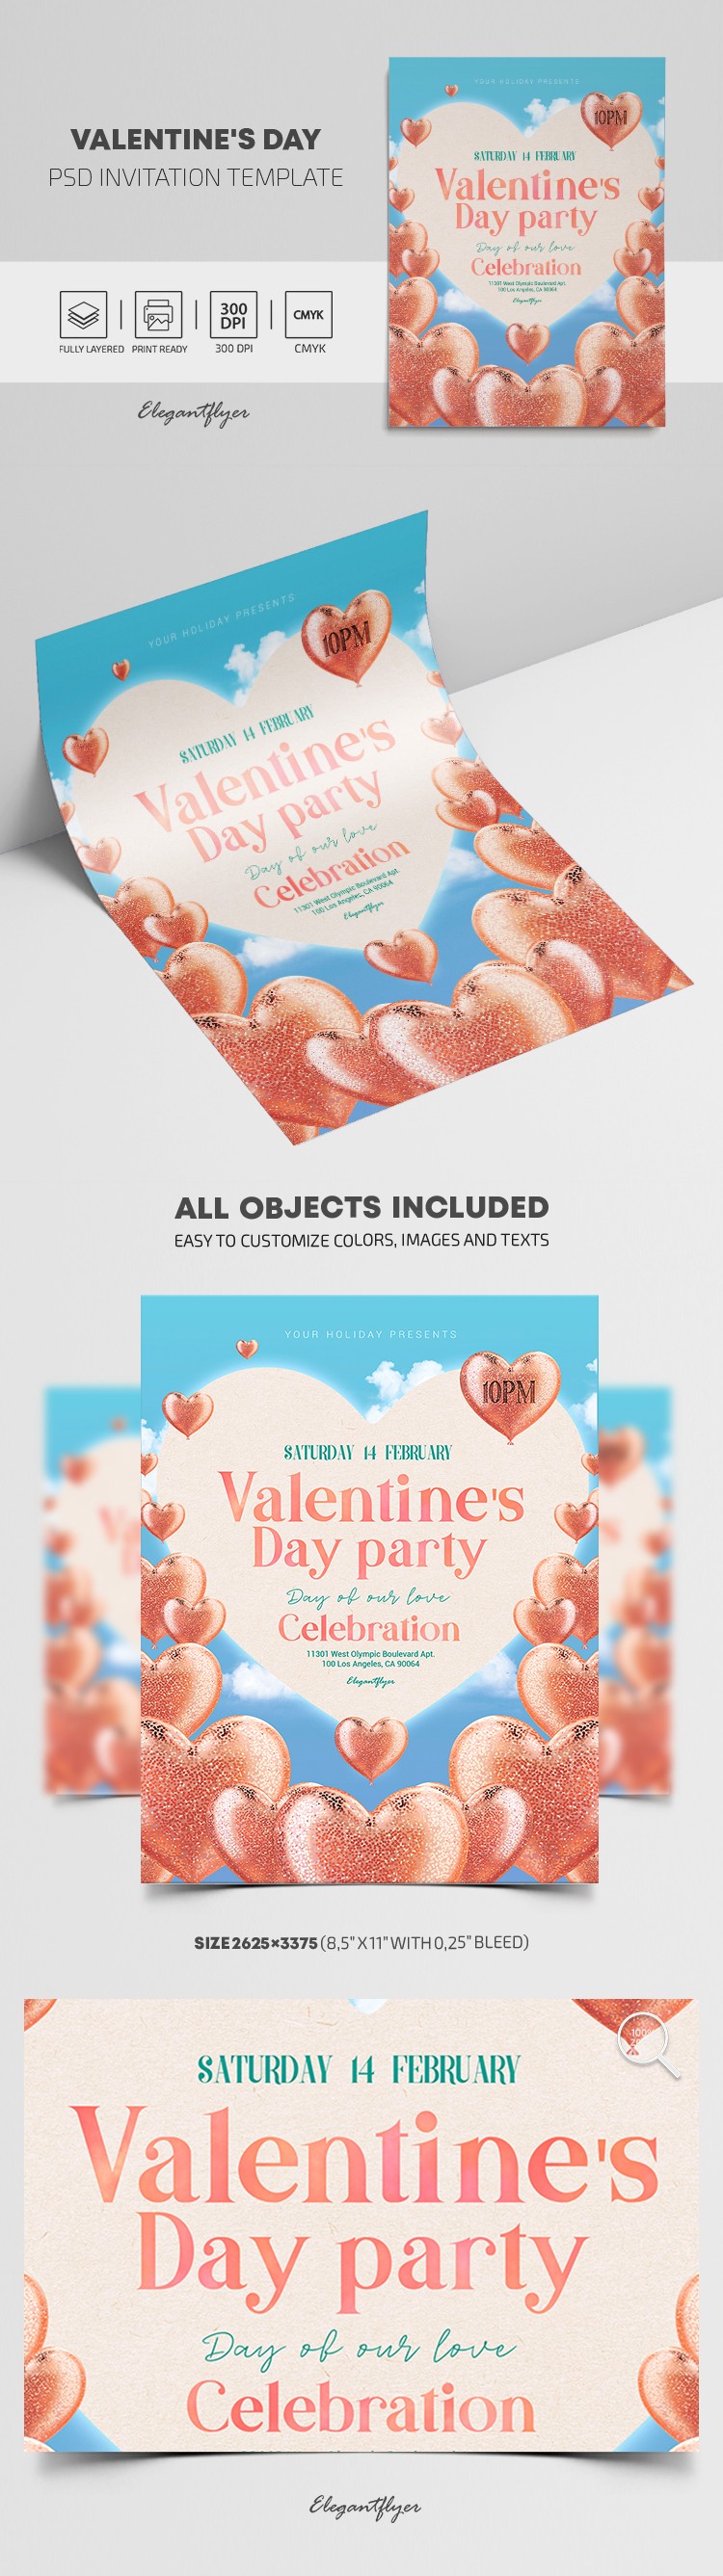 Invitación para el Día de San Valentín by ElegantFlyer